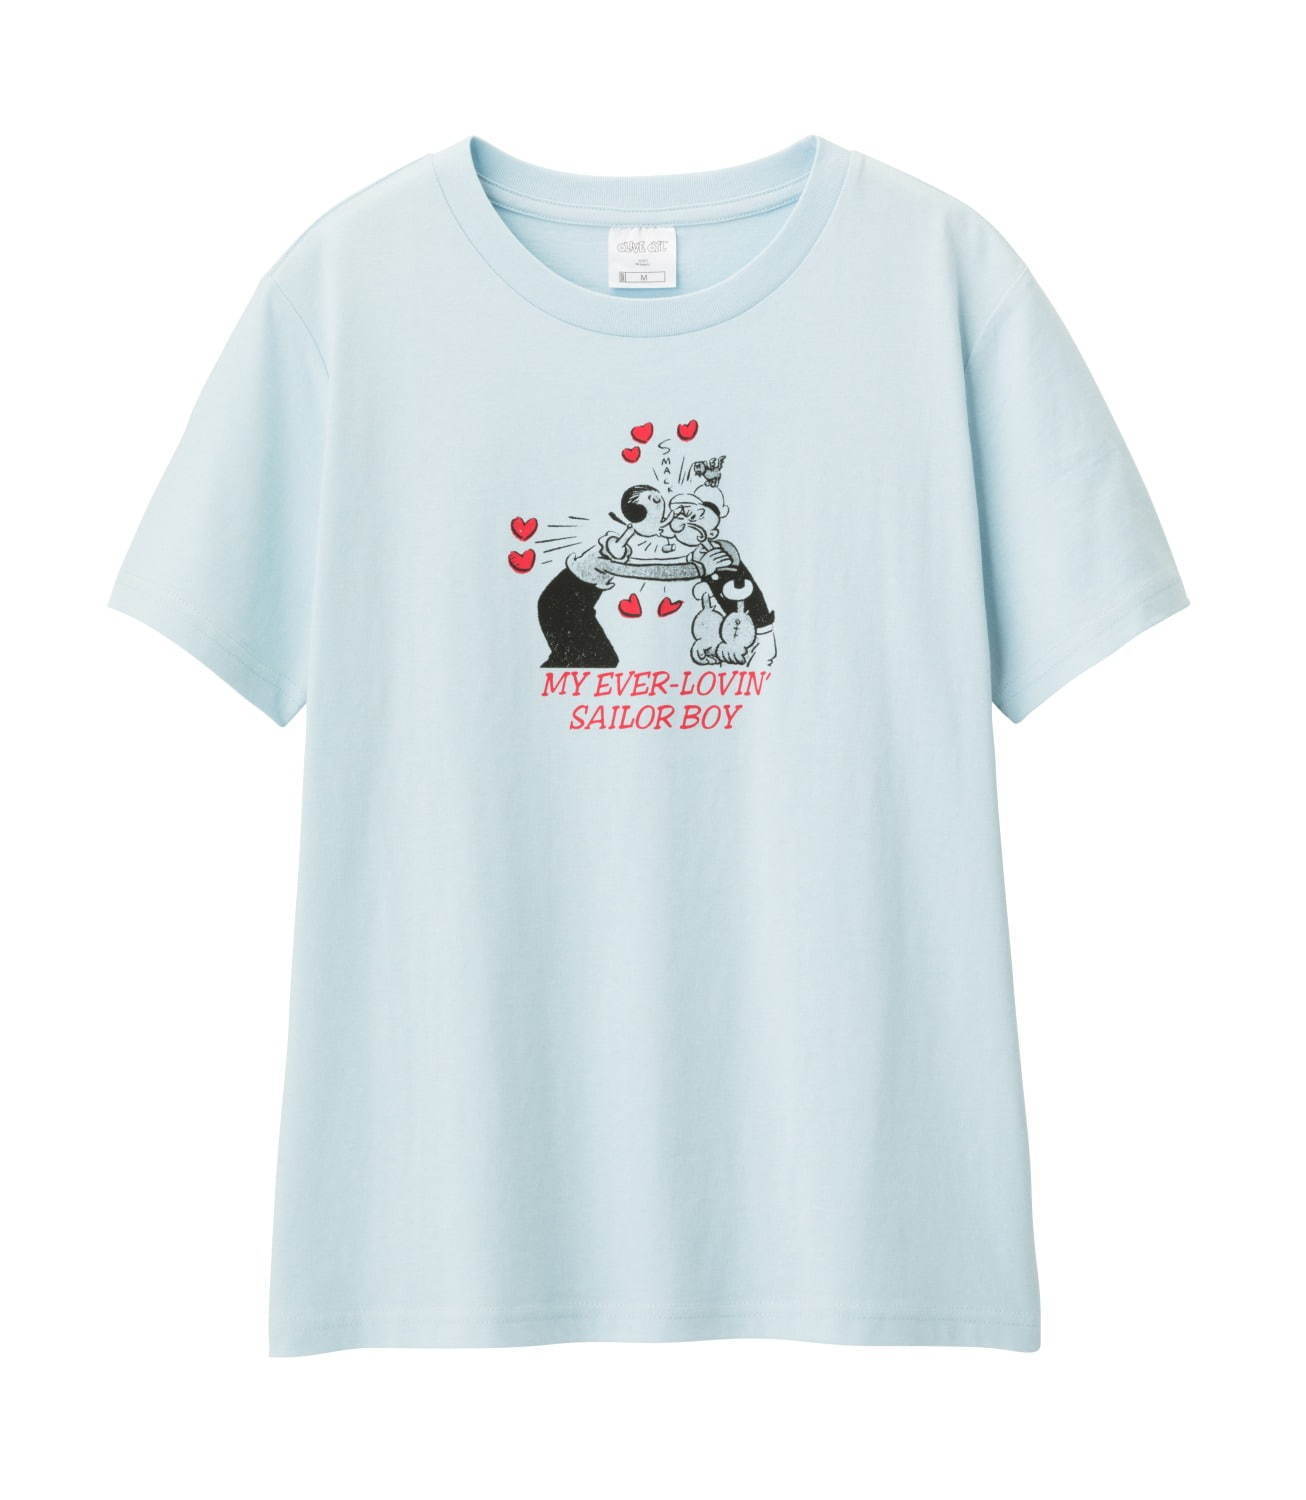 Gu ベティー ブープ オリーブ 初コラボtシャツ 人気キャラのイラスト ロゴを配して ファッションプレス